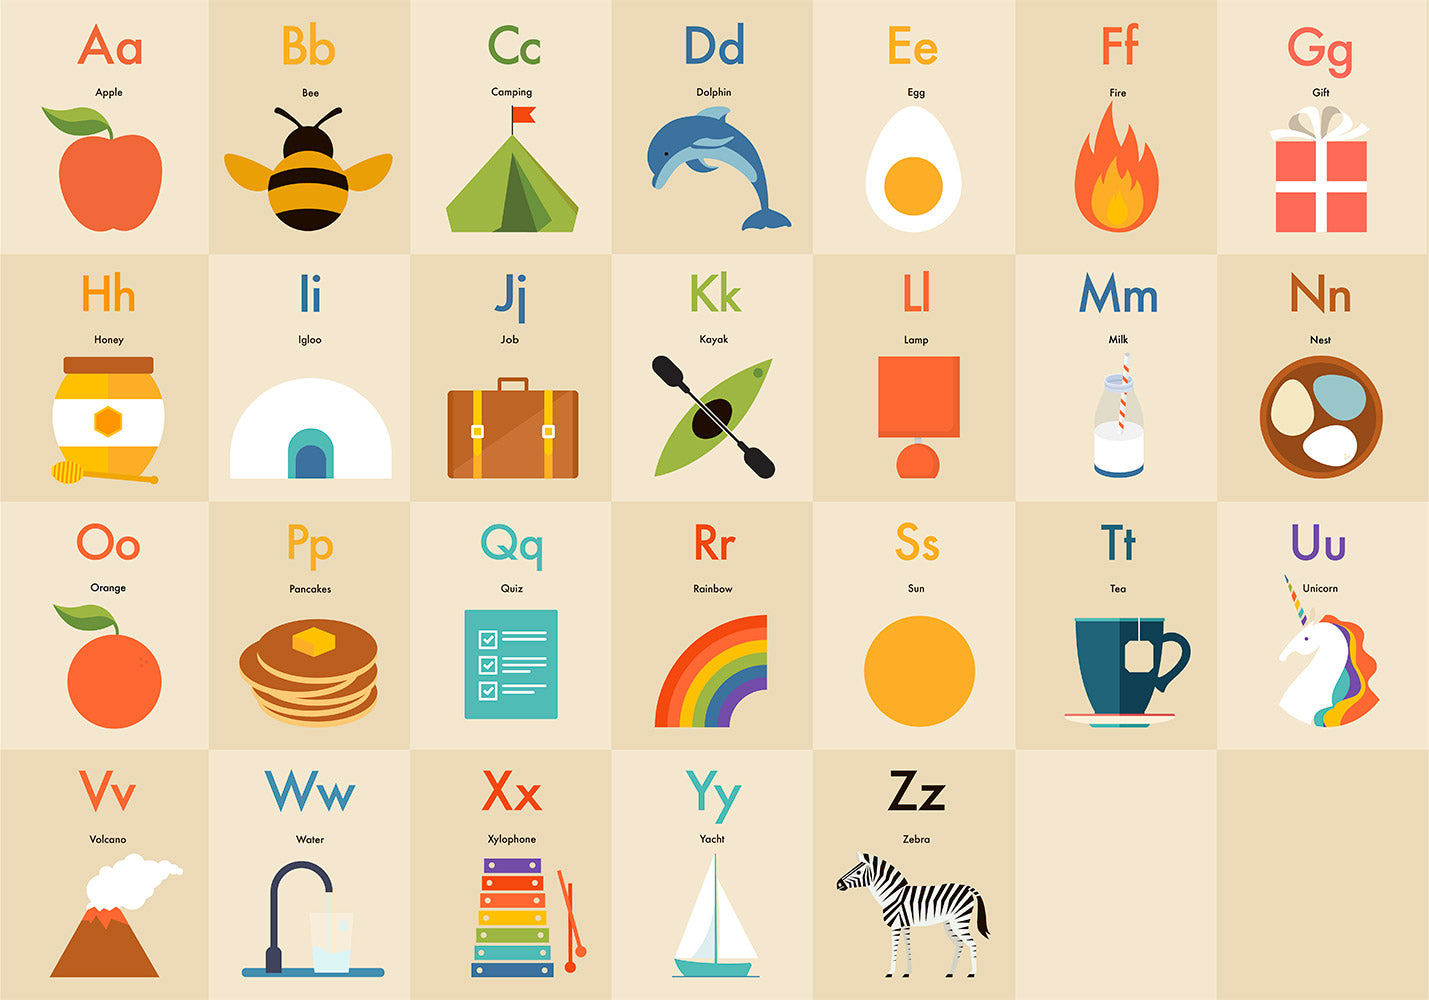 Full Alphabet - Children's Alphabet Poster in English